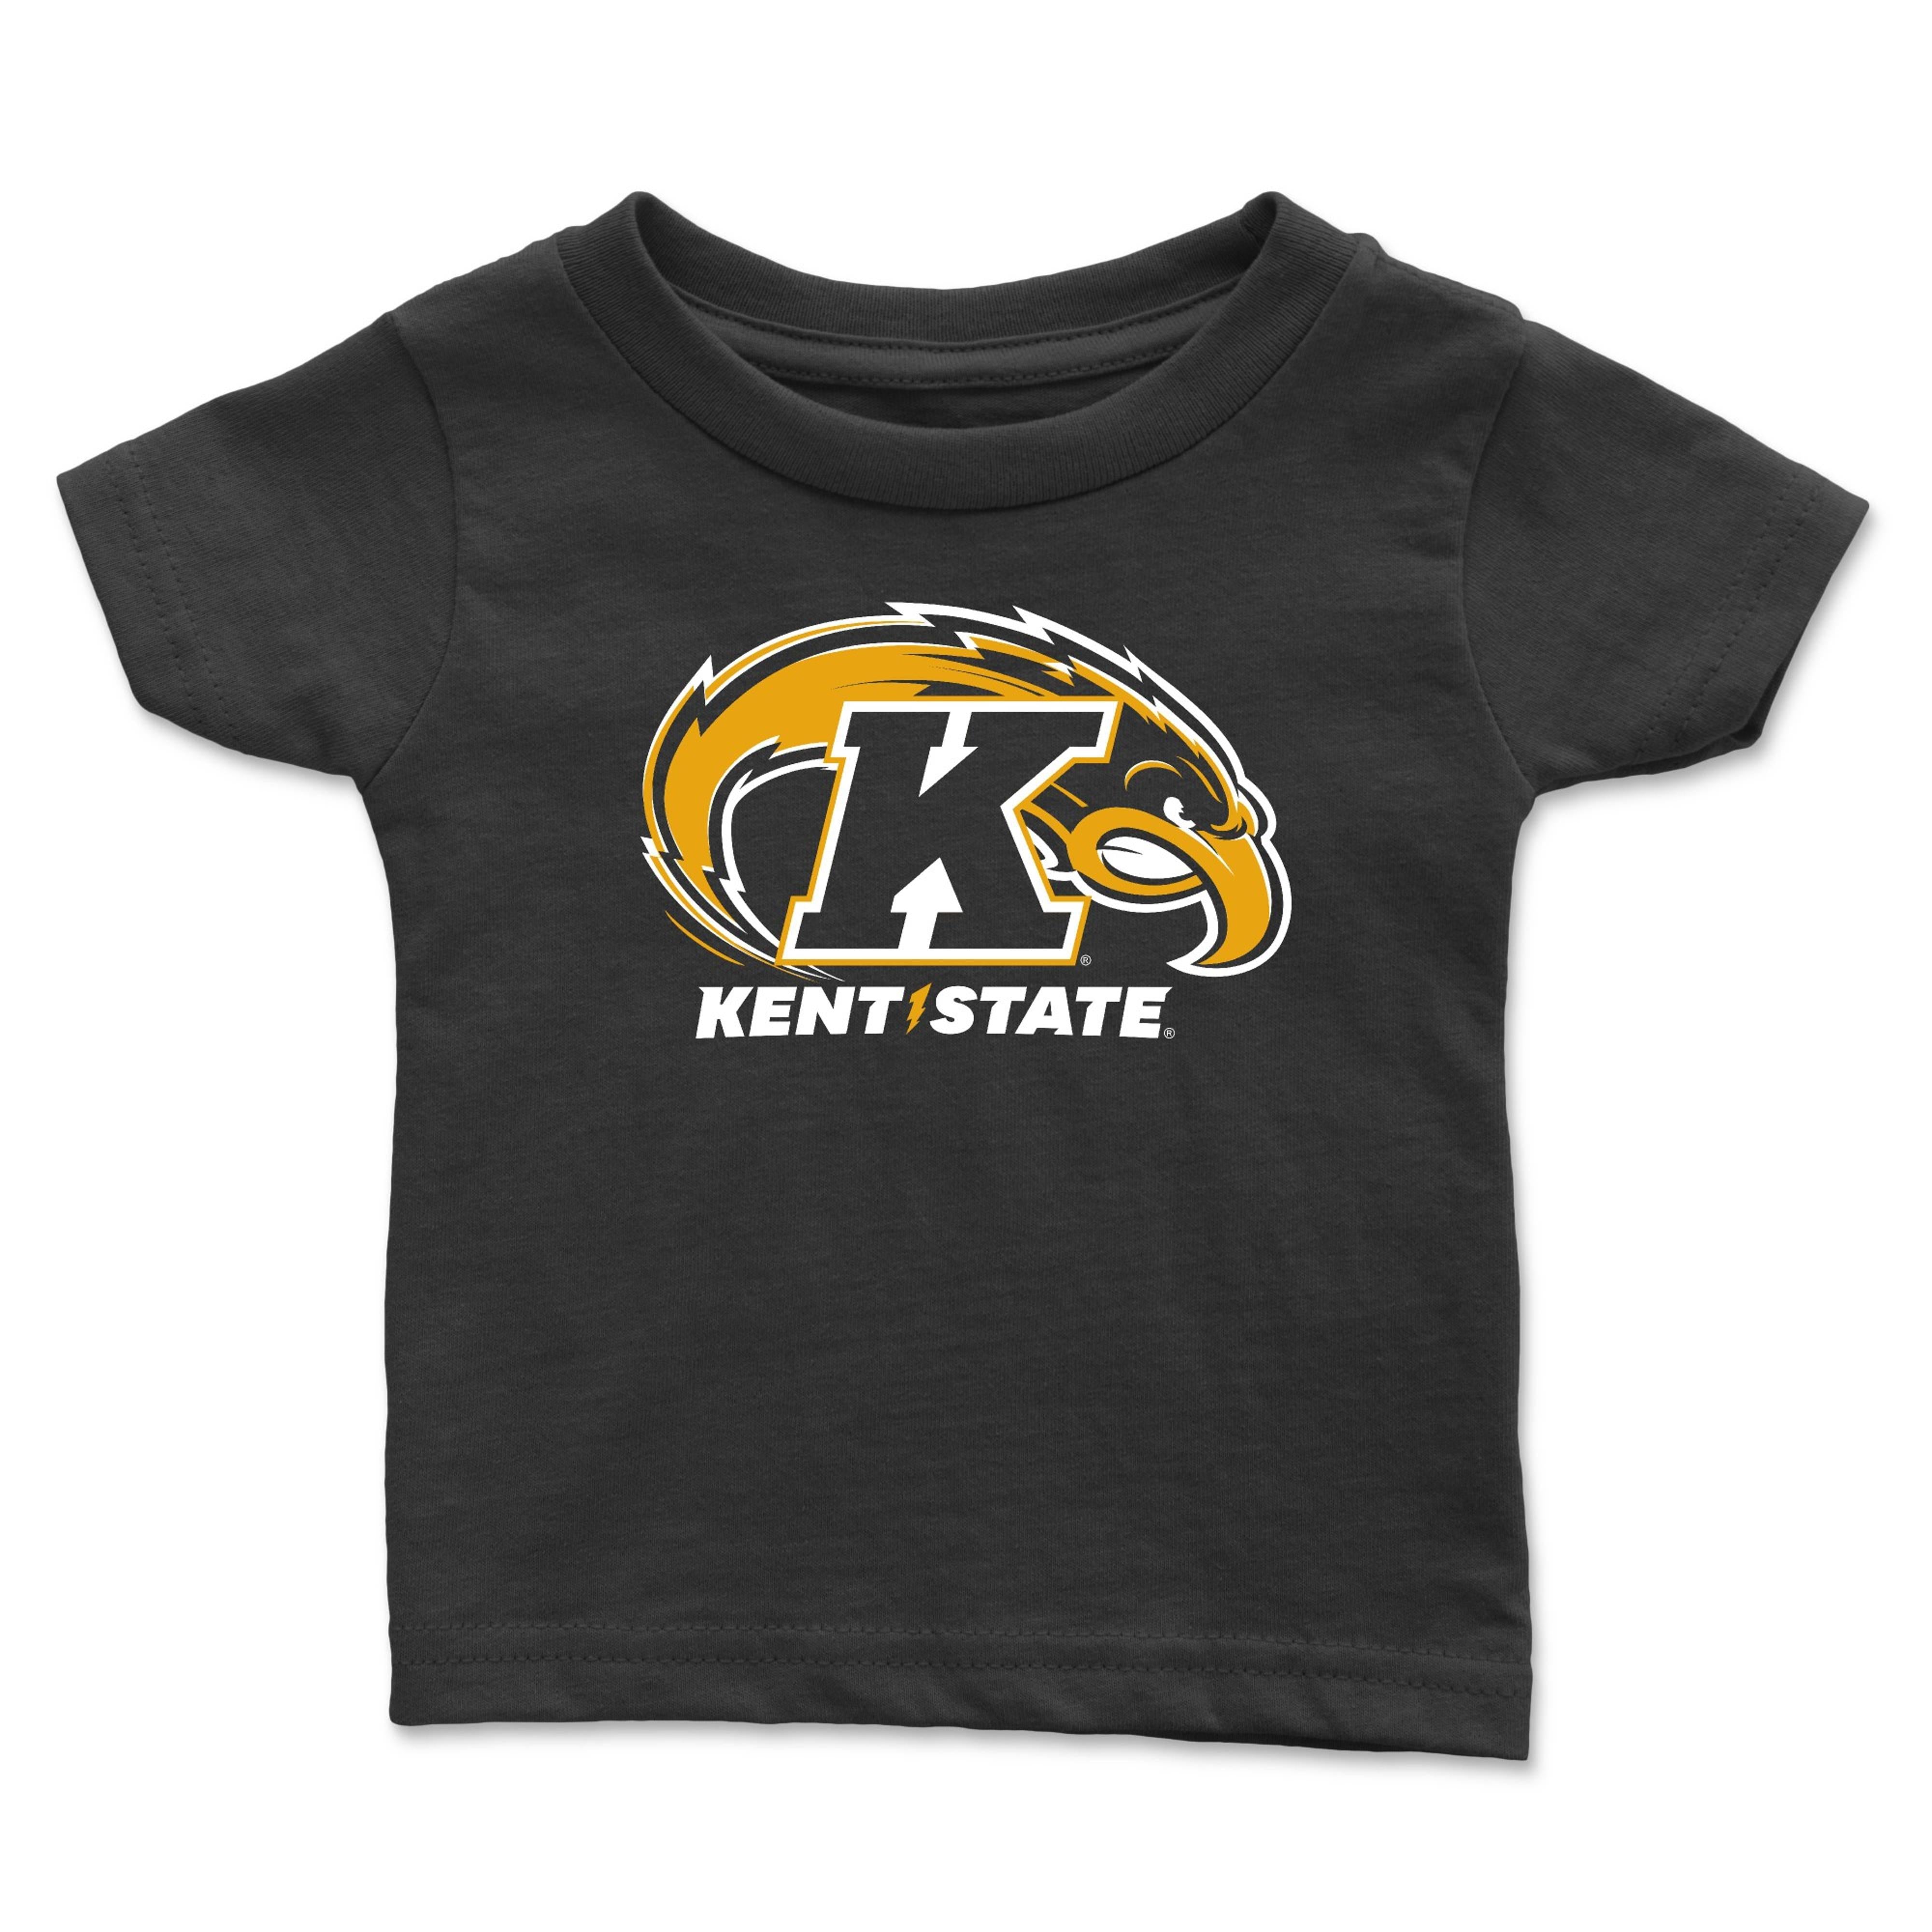 2c Kent State Navy Toddler T-Shirt